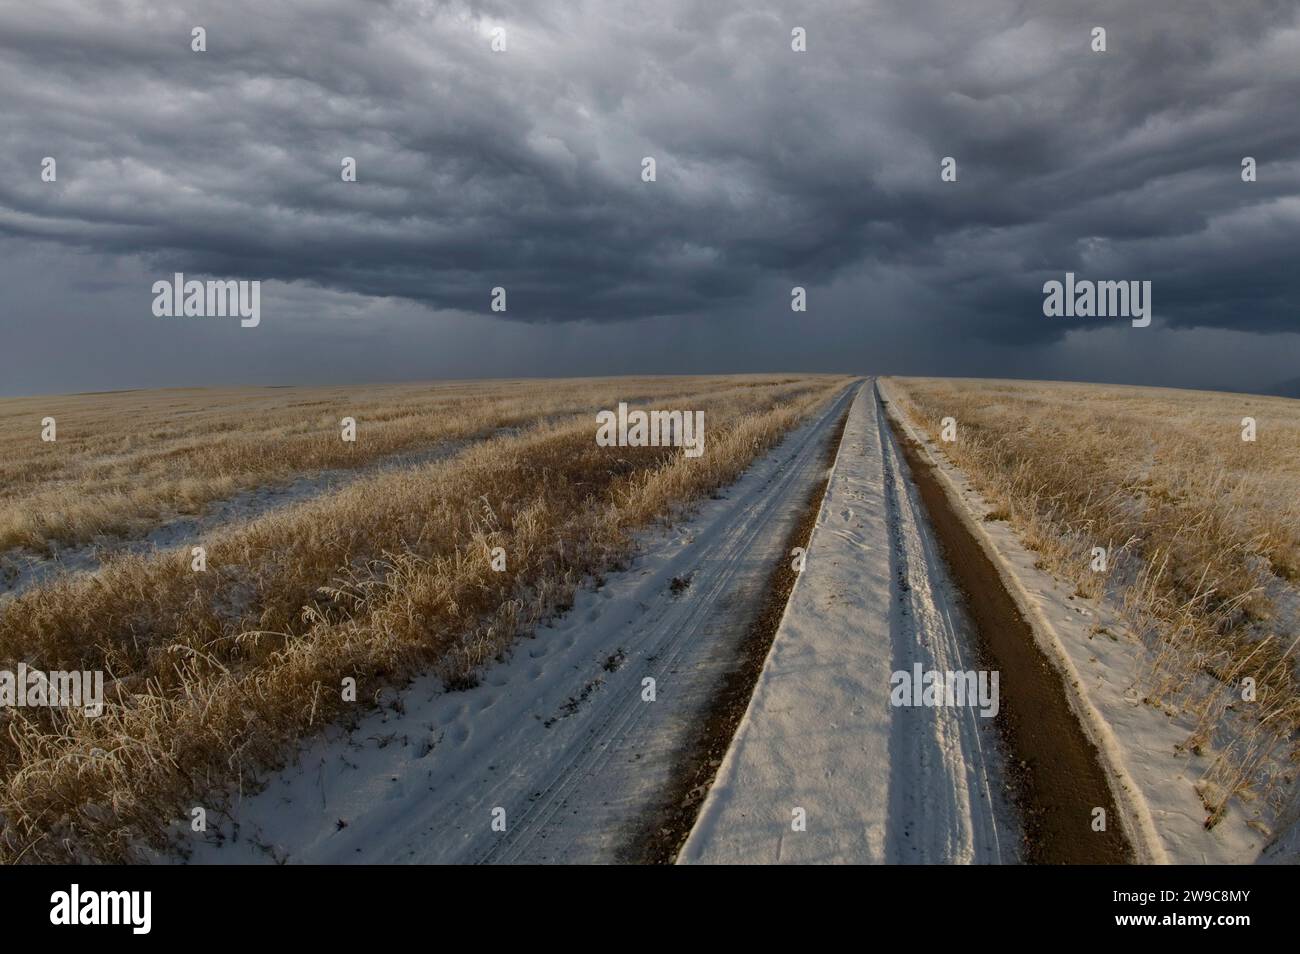 Strada sterrata ricoperta di neve attraverso un campo vuoto con nuvole di tempeste che si stanno diffondendo all'orizzonte Foto Stock